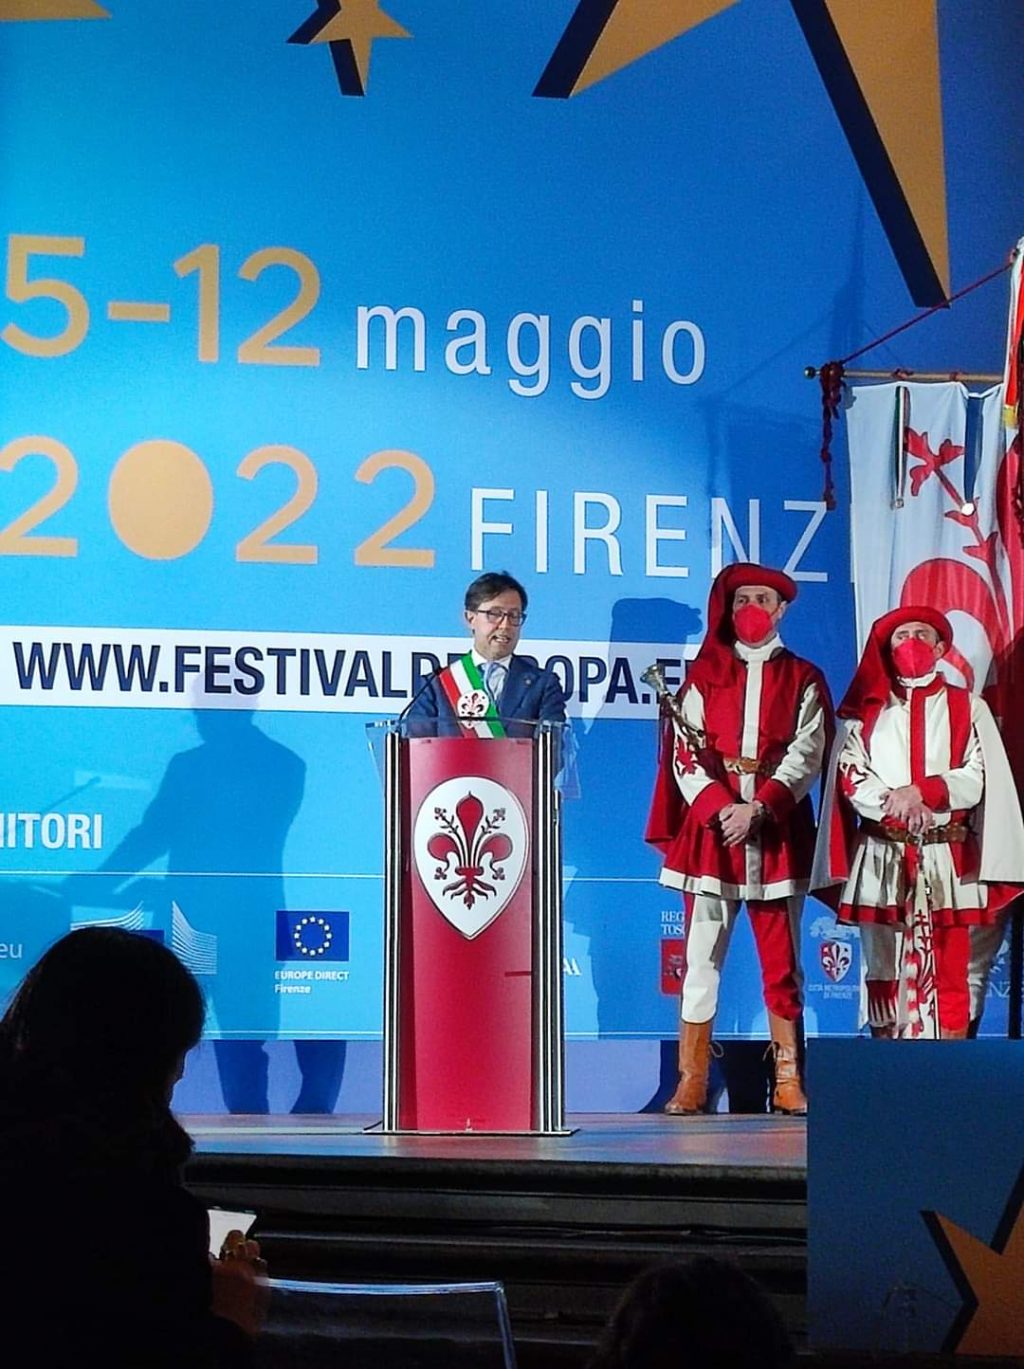 Festival Europa 2022 Firenze